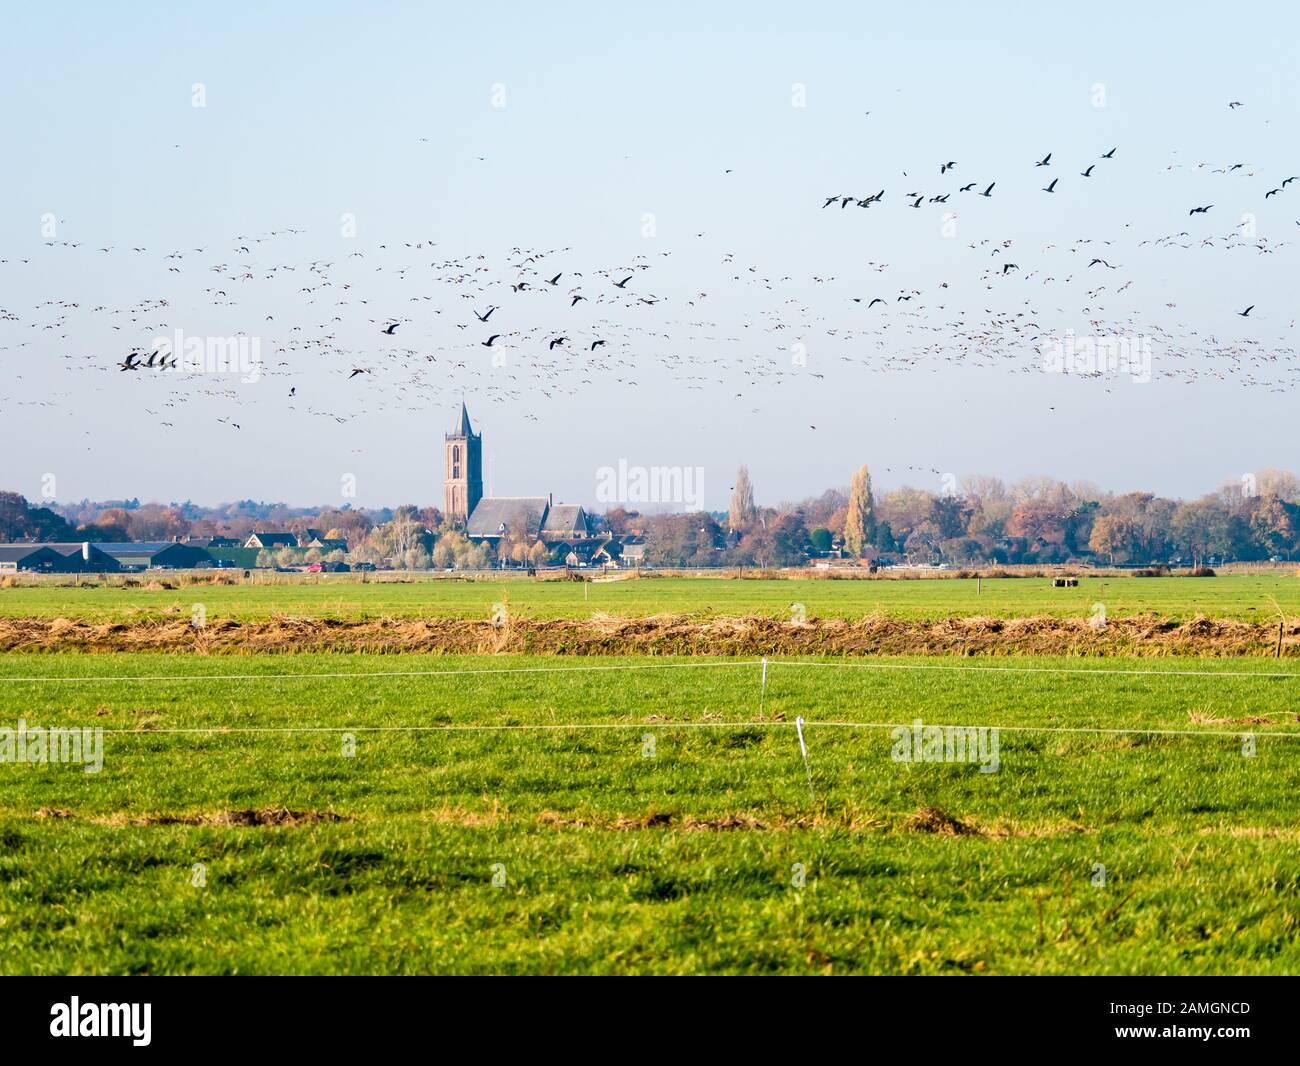 Gruppi di geese grigiollag e fronteggiante che volano su prati in polder Eemppolder e chiesa di Eemnes, Paesi Bassi Foto Stock